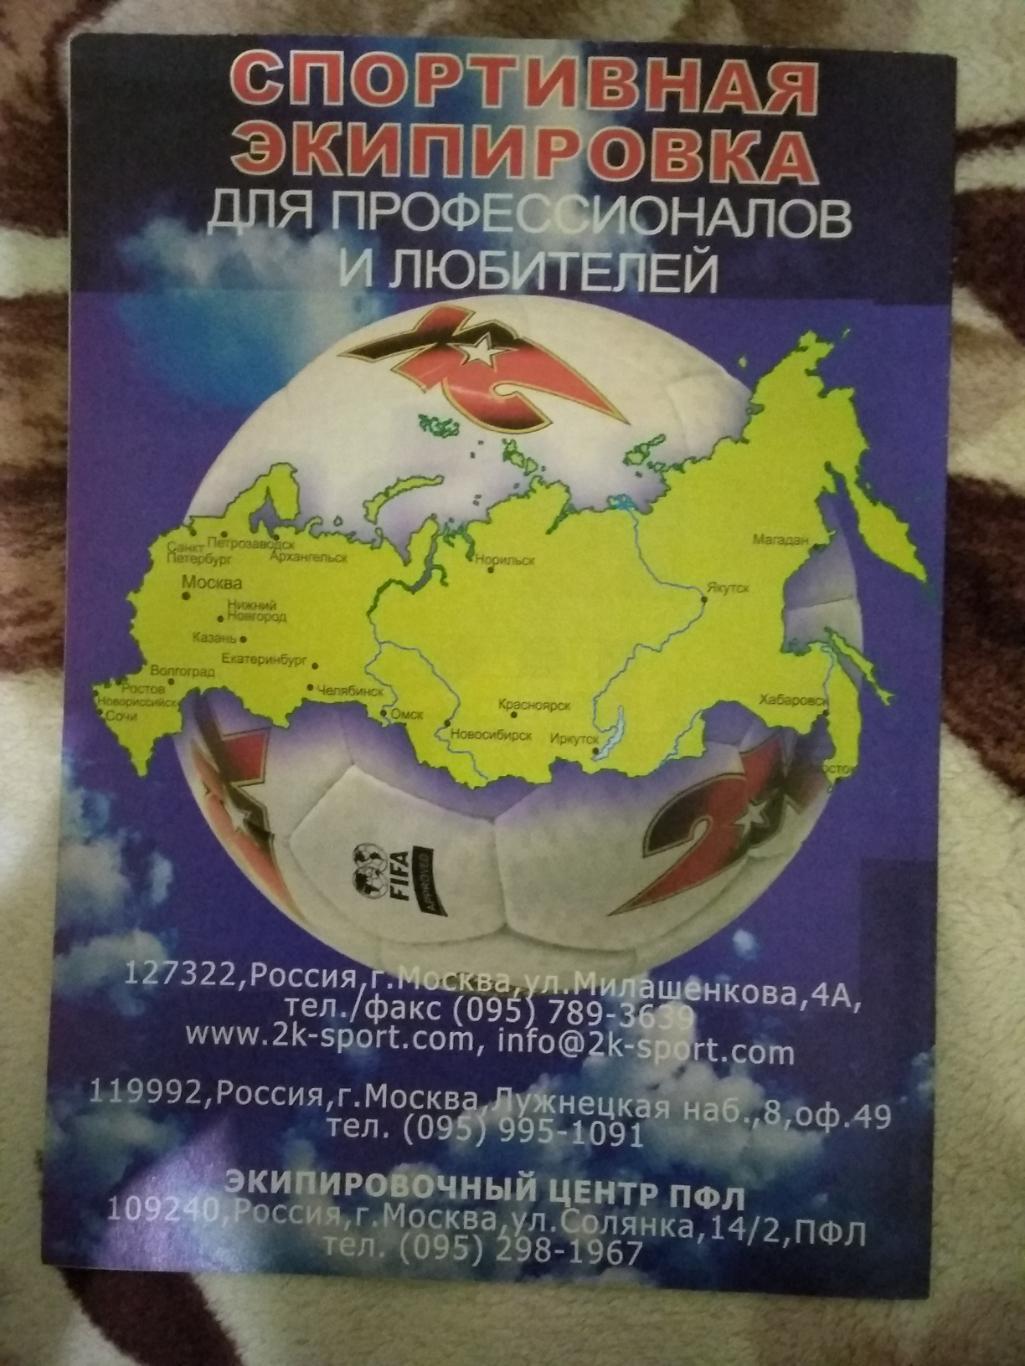 Журнал.Мой футбол №24 2004 г. (Чемпионат Европы) (постер). 2